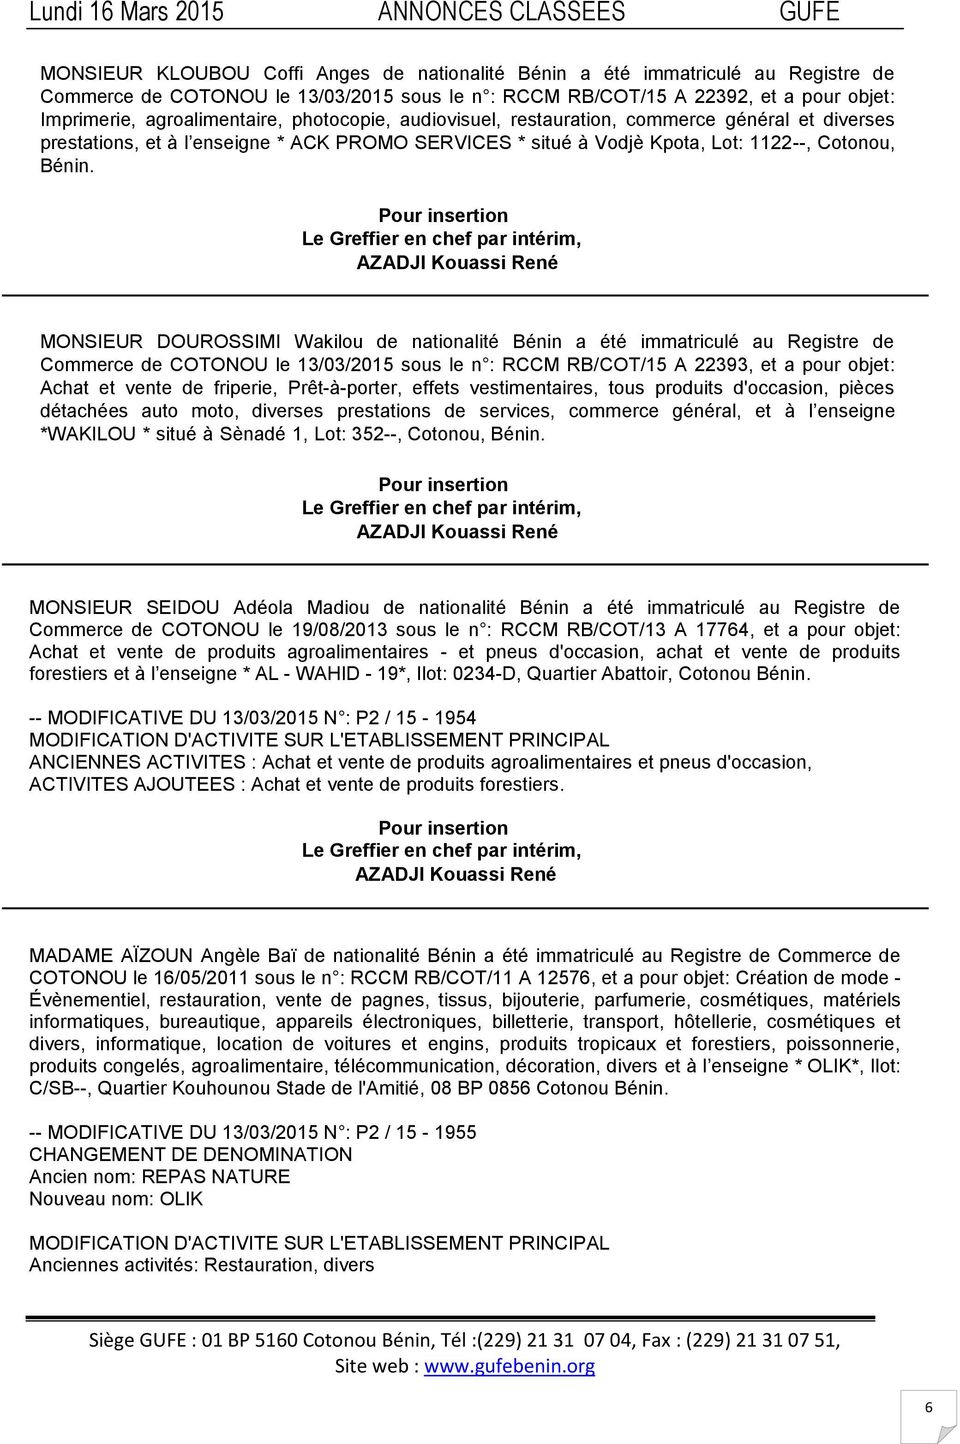 MONSIEUR DOUROSSIMI Wakilou de nationalité Bénin a été immatriculé au Registre de Commerce de COTONOU le 13/03/2015 sous le n : RCCM RB/COT/15 A 22393, et a pour objet: Achat et vente de friperie,